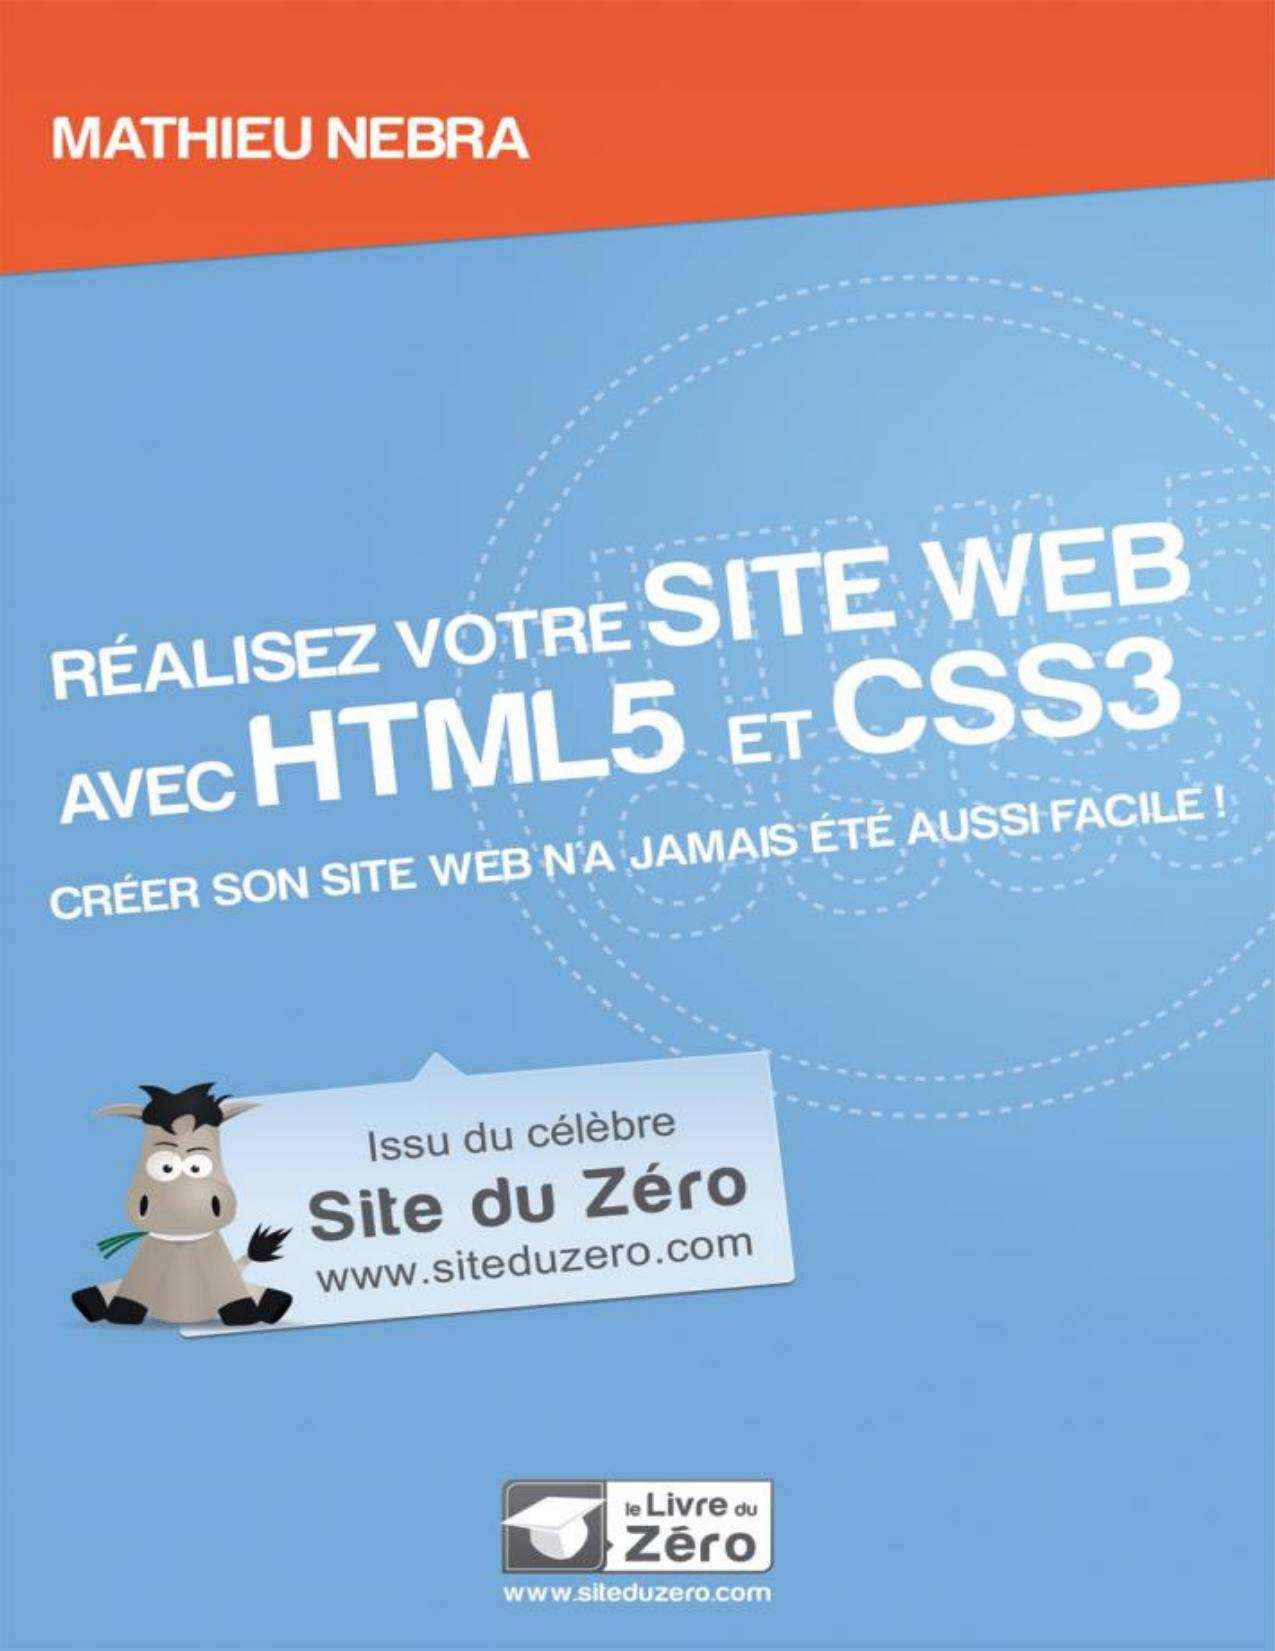 Réalisez votre site web avec HTML5 et CSS3 (Livre du Zéro) (French Edition)